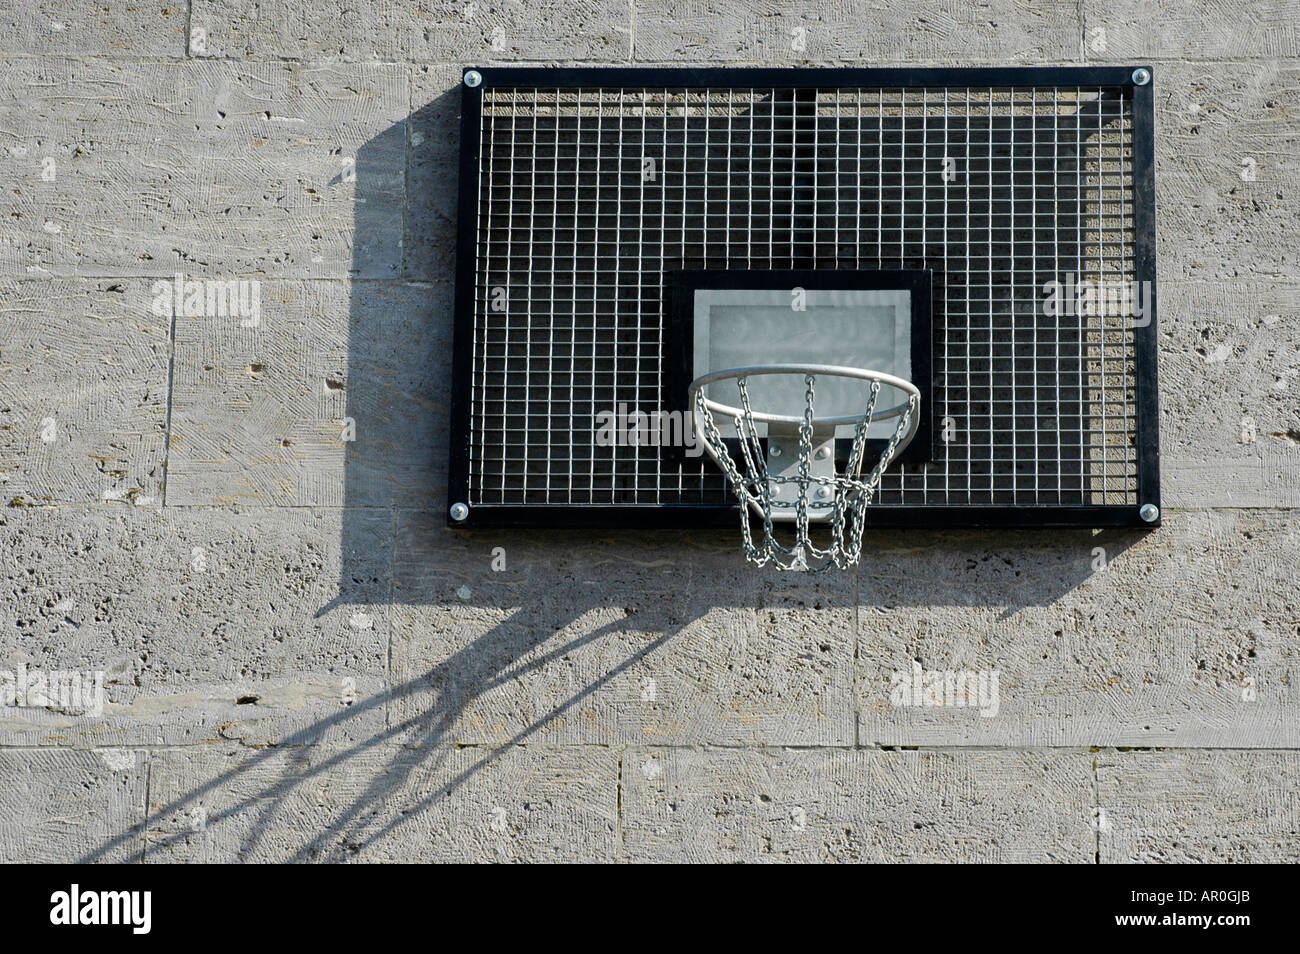 Canasta de baloncesto de metal en la pared de piedra Fotografía de stock -  Alamy